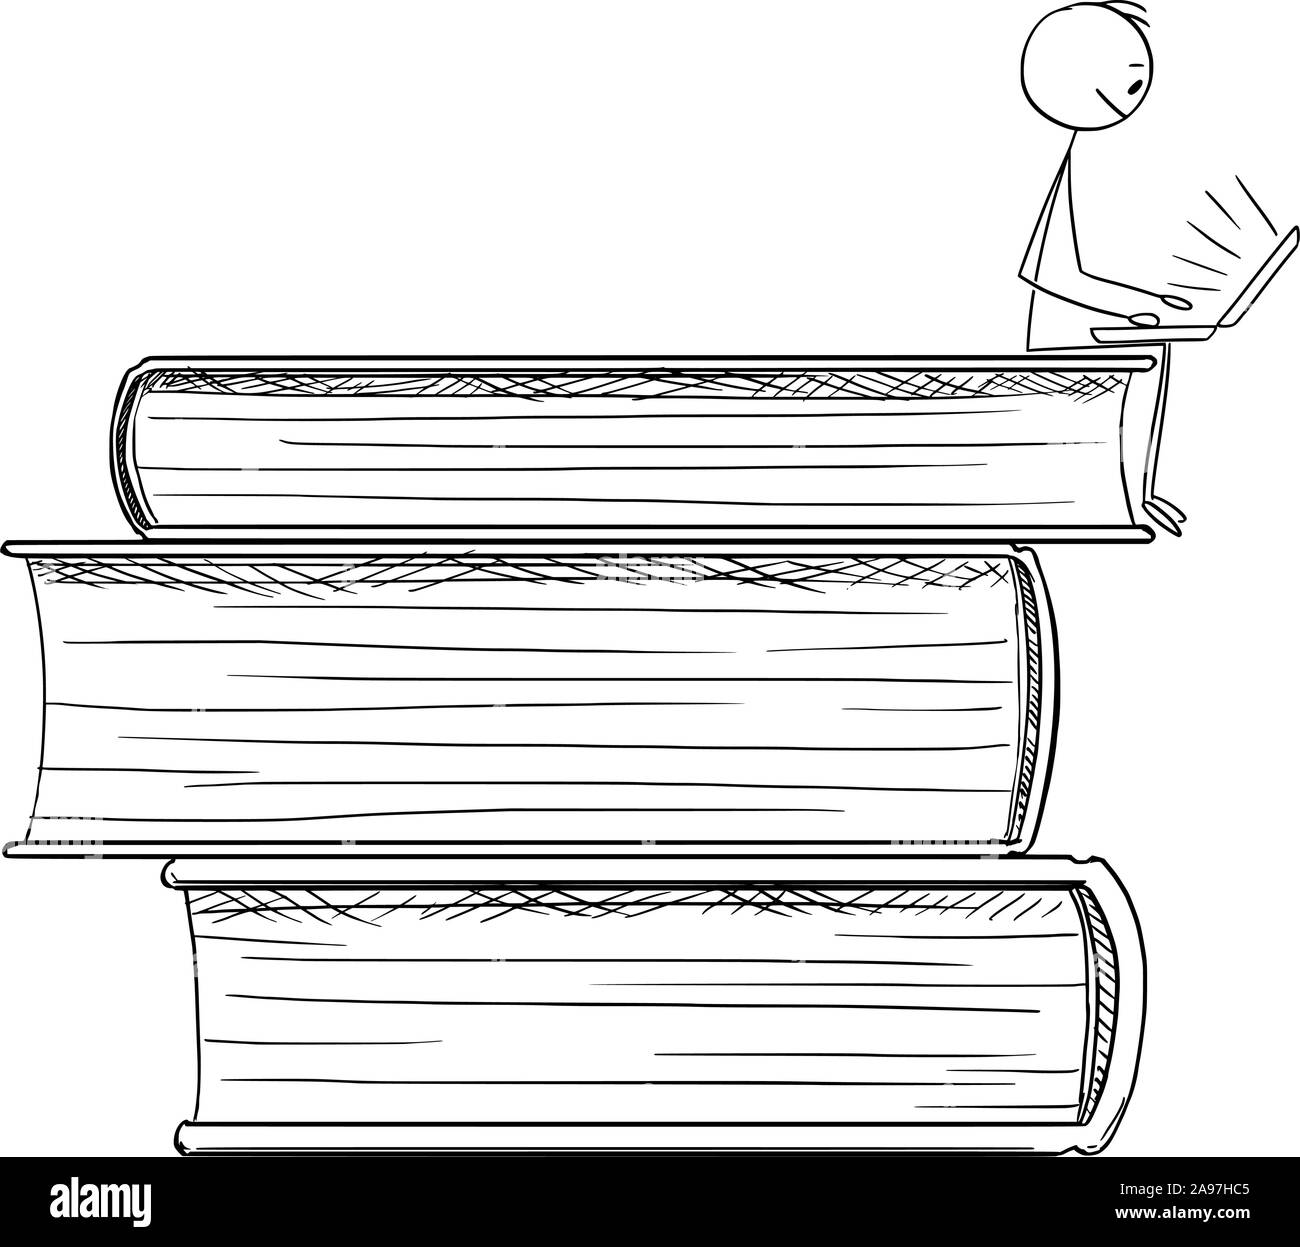 Vector cartoon stick figura disegno illustrazione concettuale dell'uomo invio sulla pila di libri di grandi dimensioni e di lavorare o studiare online su Internet sul computer. Illustrazione Vettoriale